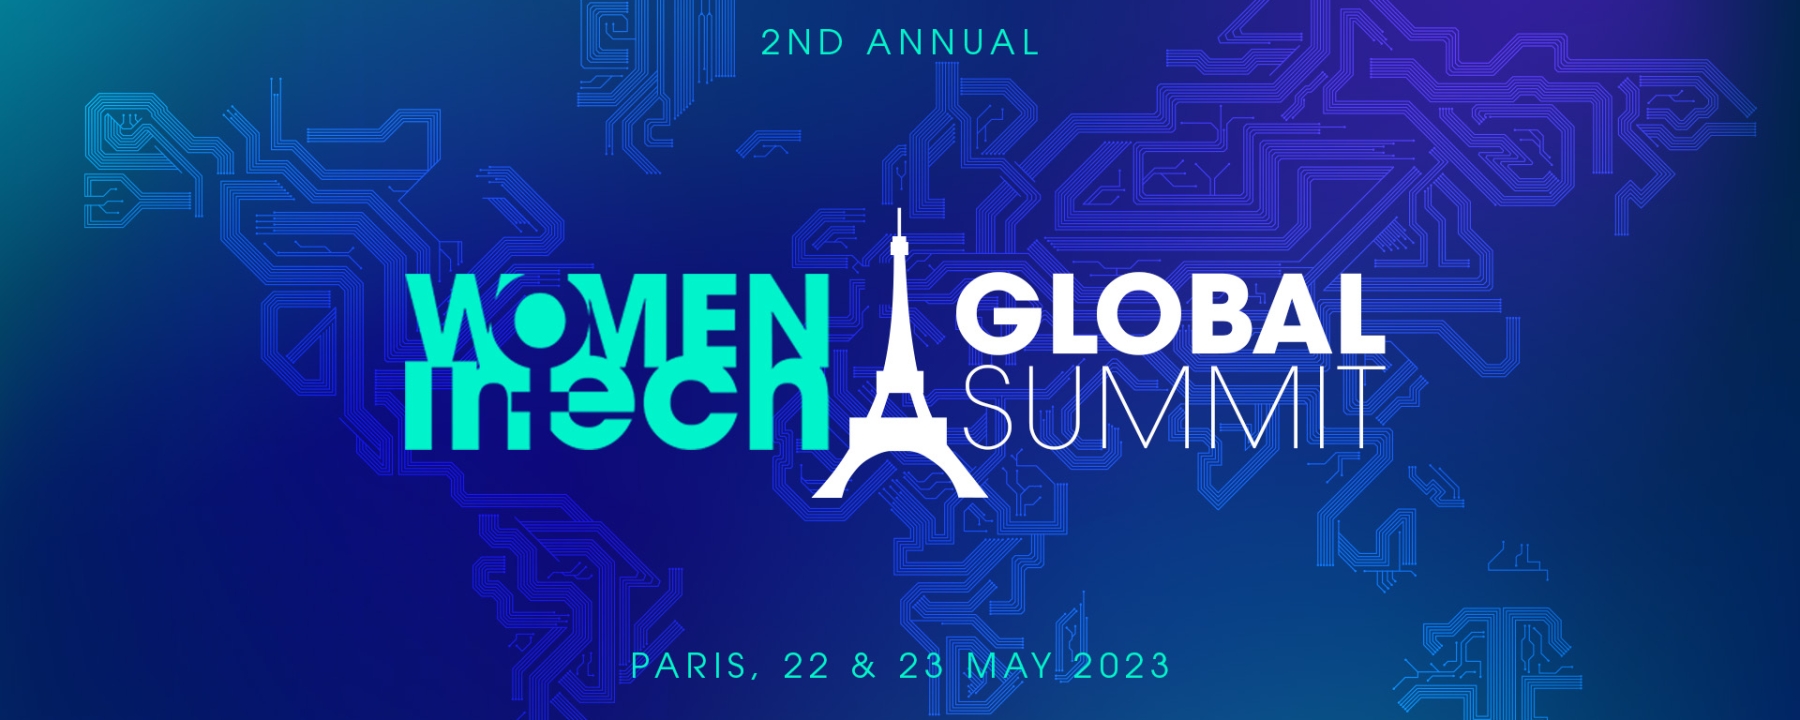 Women in Tech Global Summit 2023